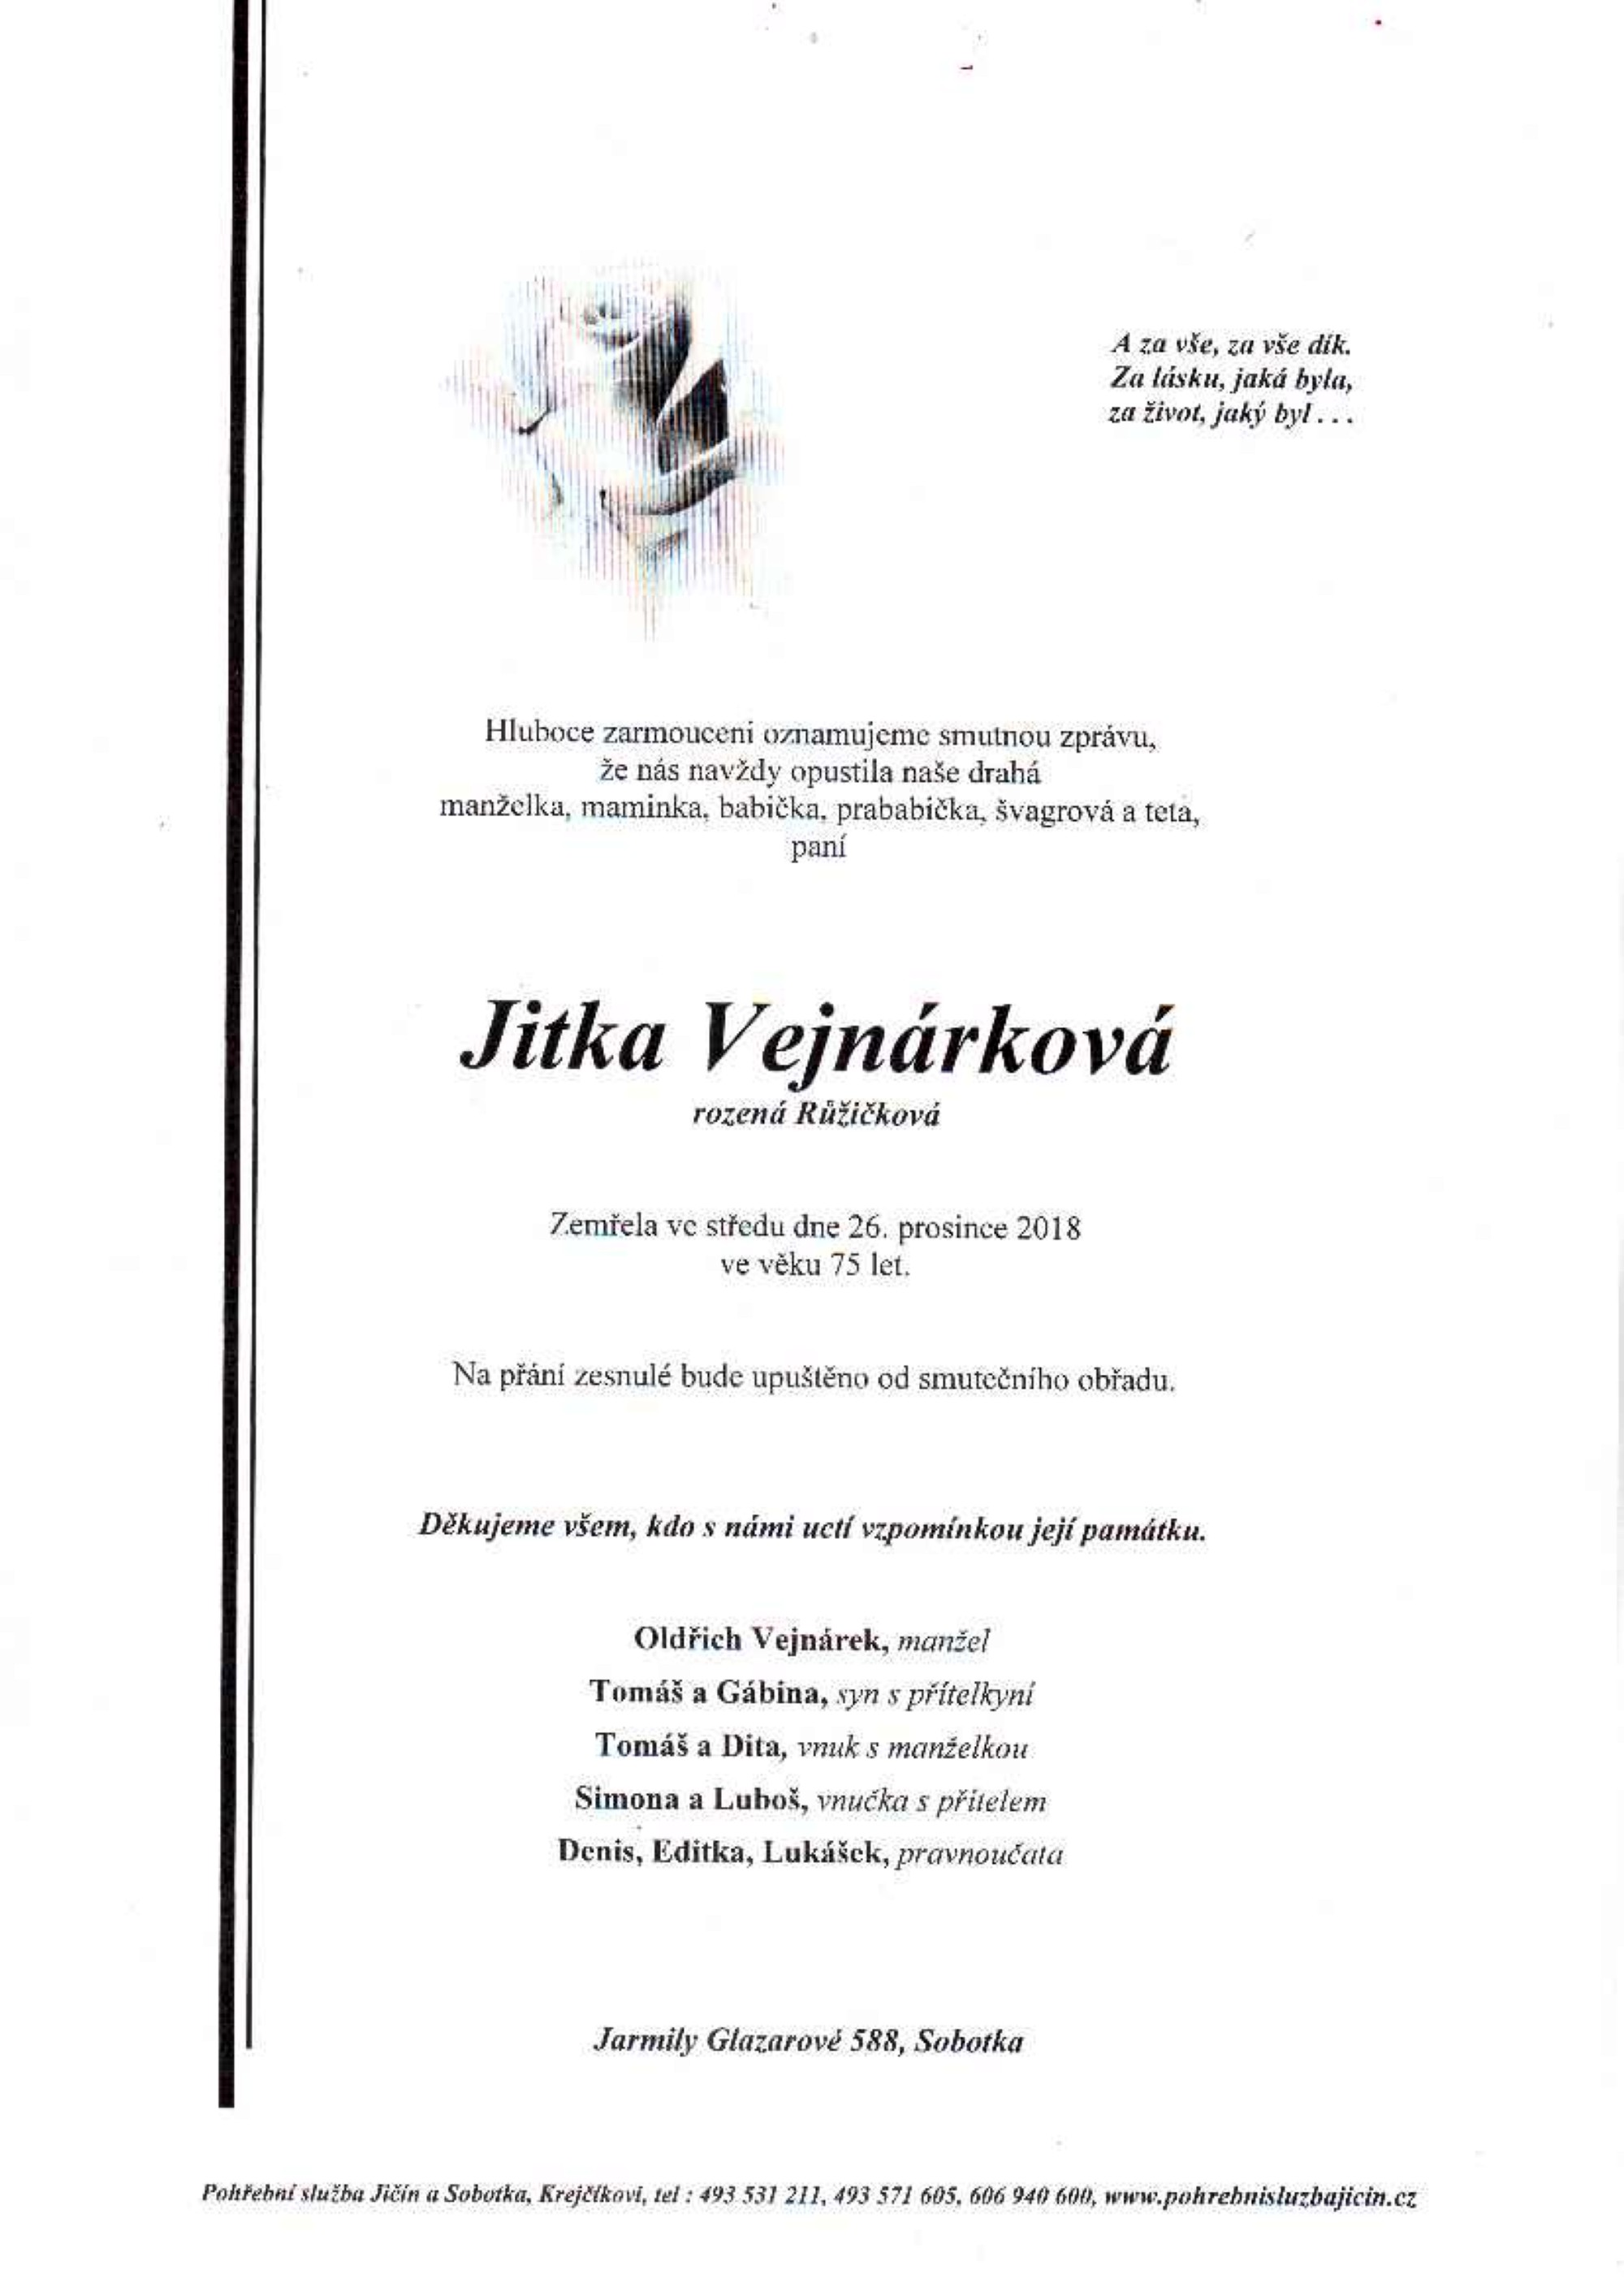 Jitka Vejnárková